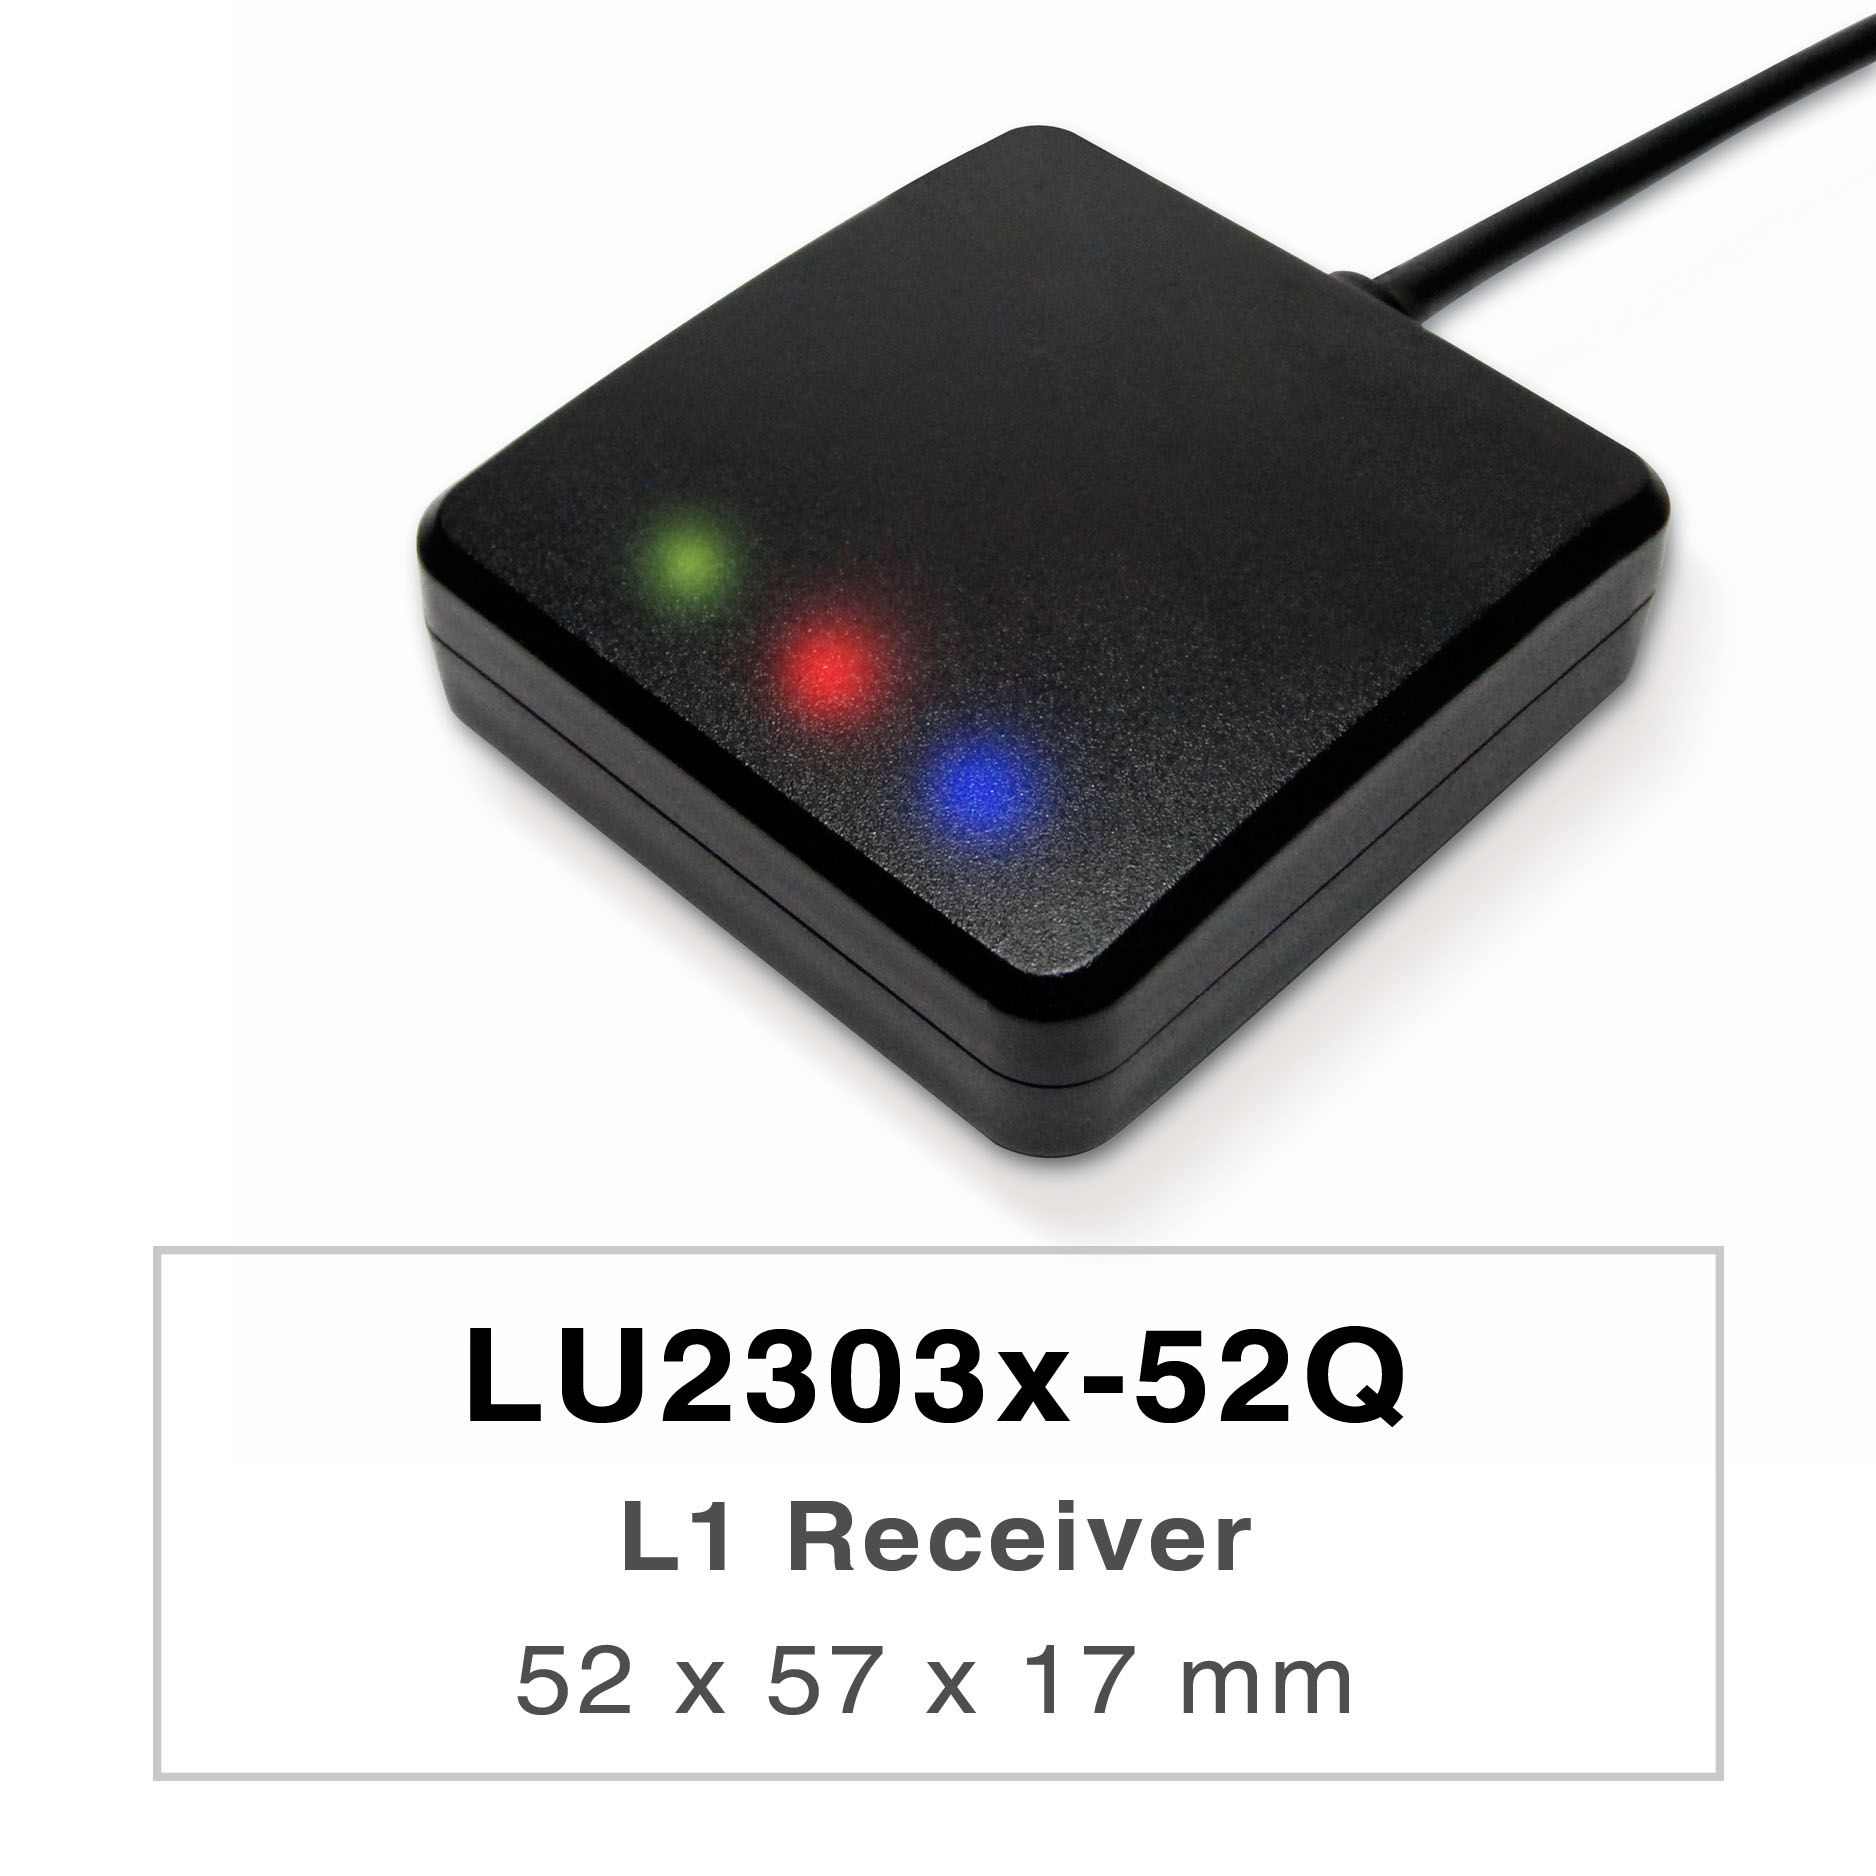 Die Produkte der LU2303x-Vx-Serie sind leistungsstarke Dual-Band-GNSS-Empfänger (auch bekannt als
GNSS-Maus), die in der Lage sind, alle globalen zivilen Navigationssysteme (GPS, GLONASS,
BDS, GALILEO, QZSS und IRNSS) zu verfolgen.